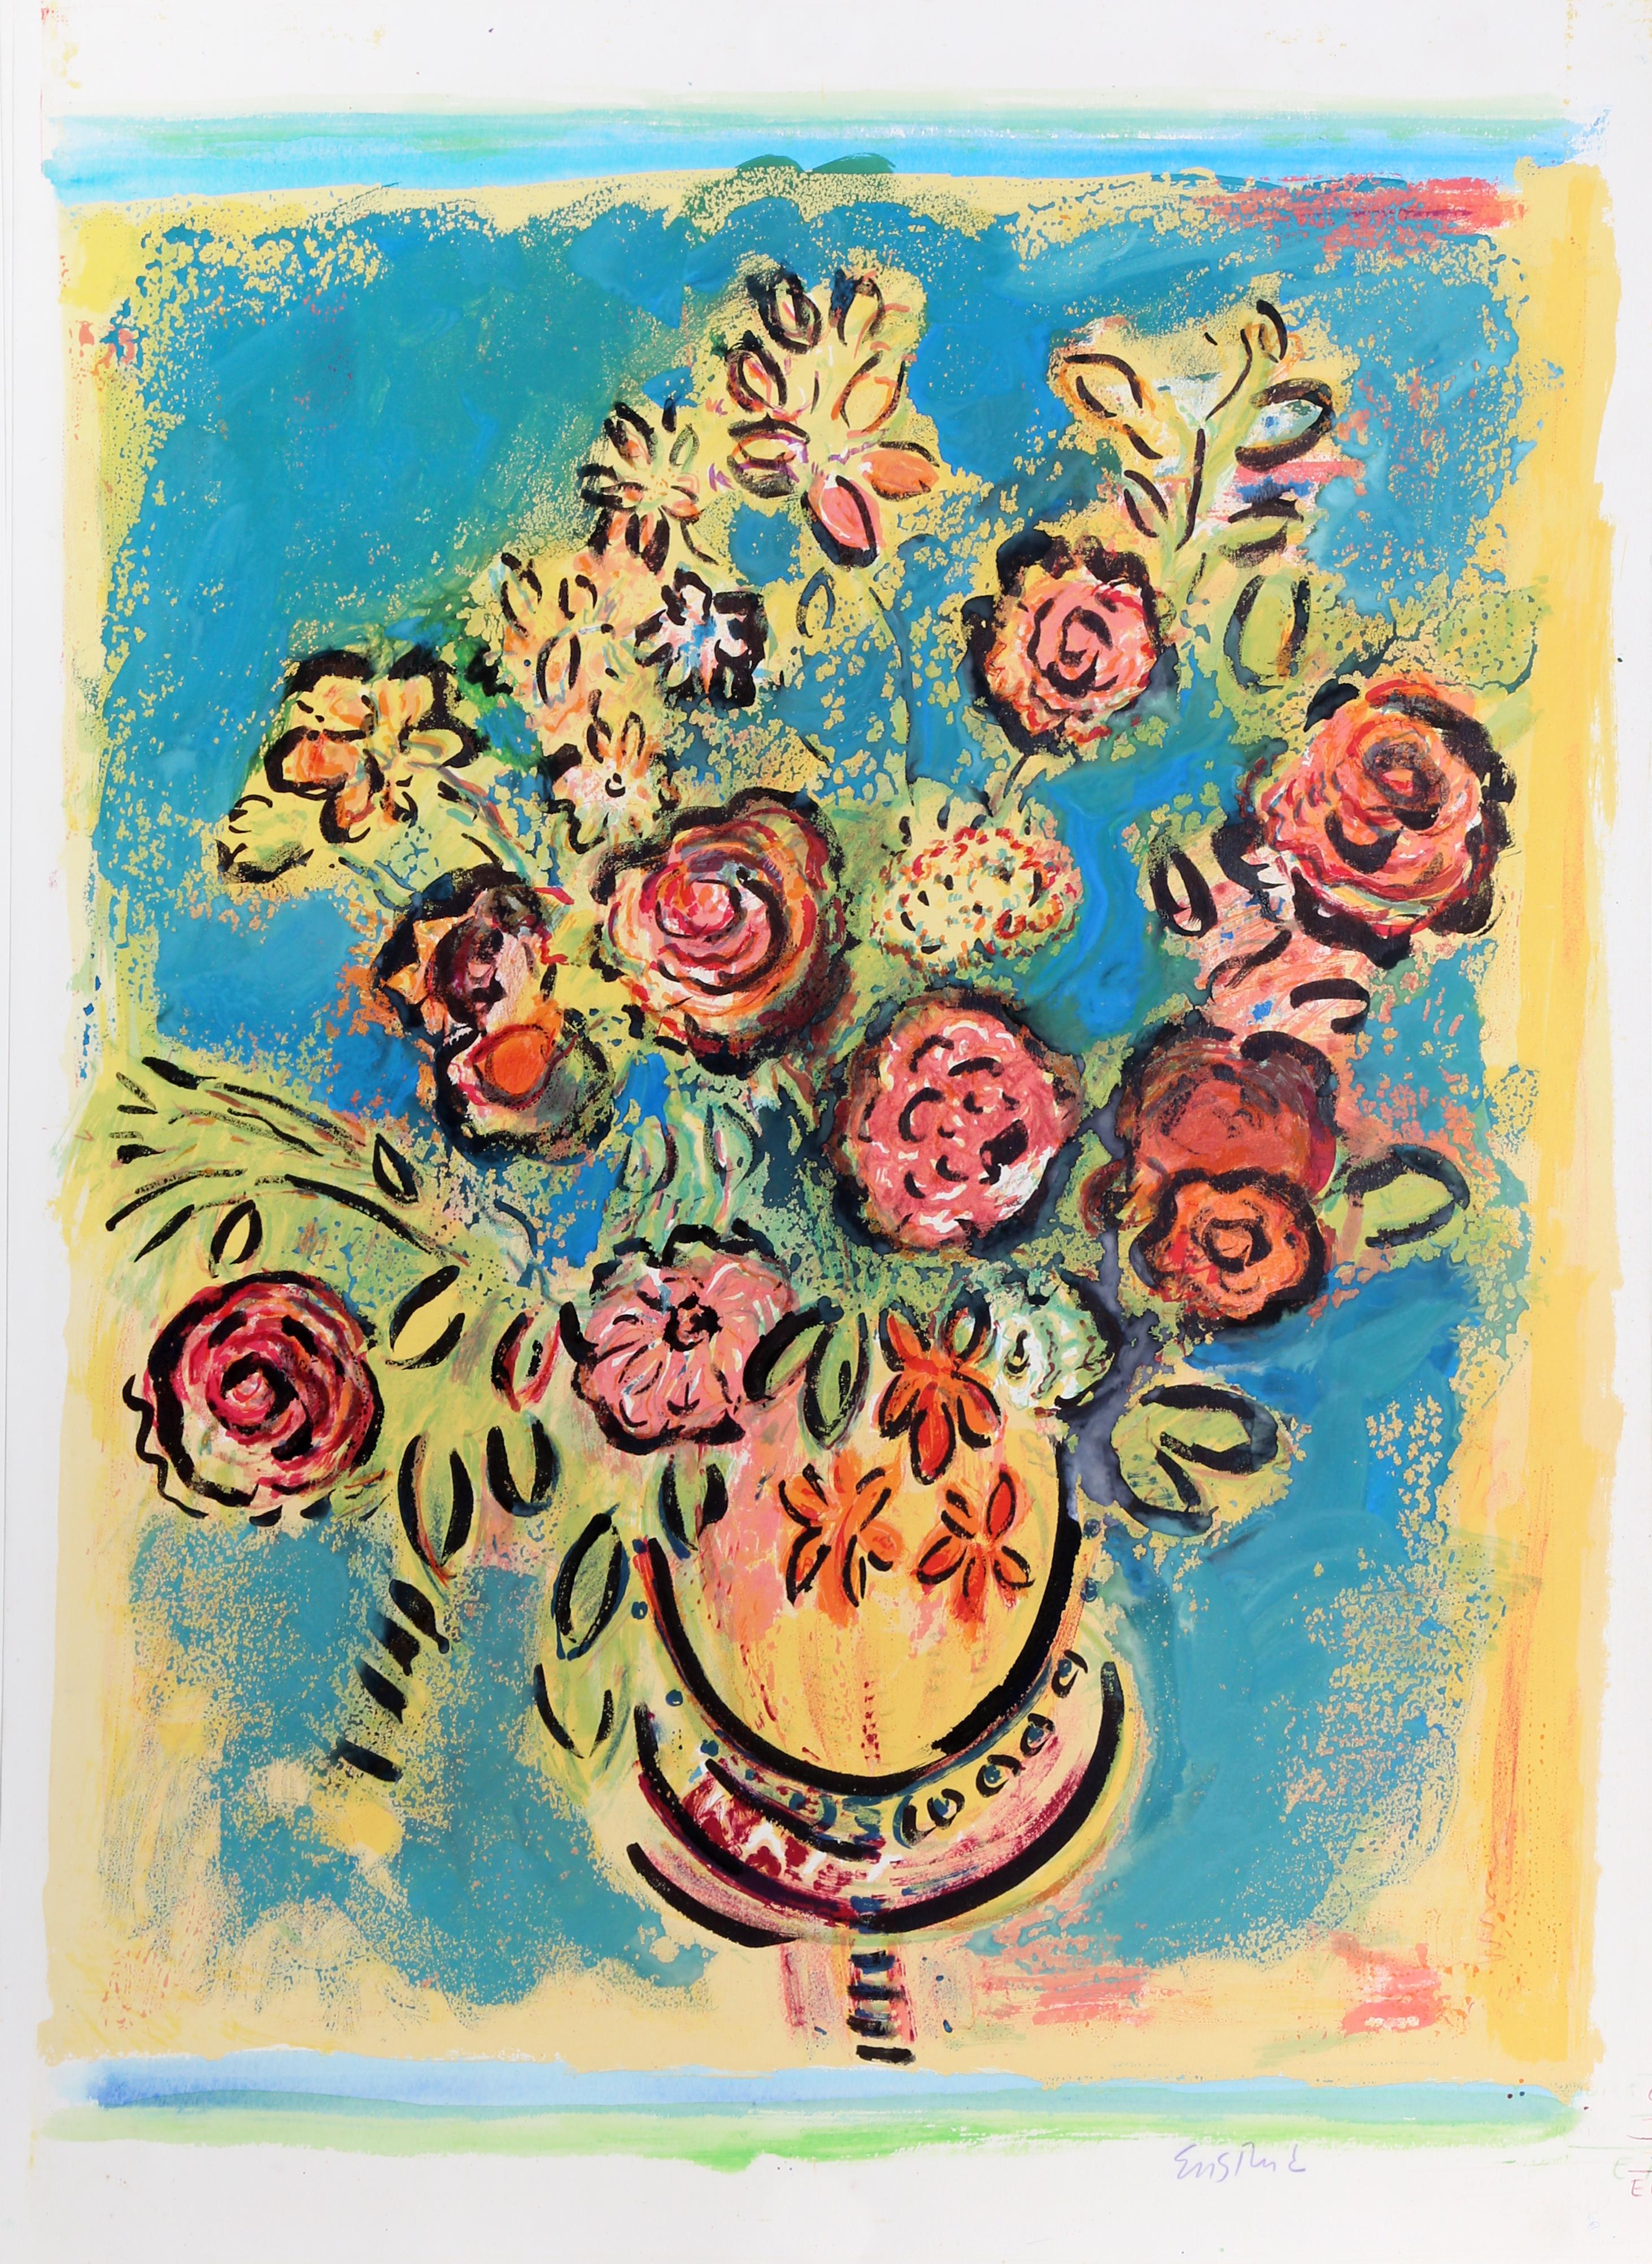 Lithographie unique peinte à la main d'un bouquet de fleurs coloré par Wayne Ensrud, américain (1934).
Dimanche tranquille (bleu)
Wayne Ensrud, américain (1934)
Date : 1980
Lithographie peinte à la main, signée au crayon
Taille : 35 in. x 26 in.